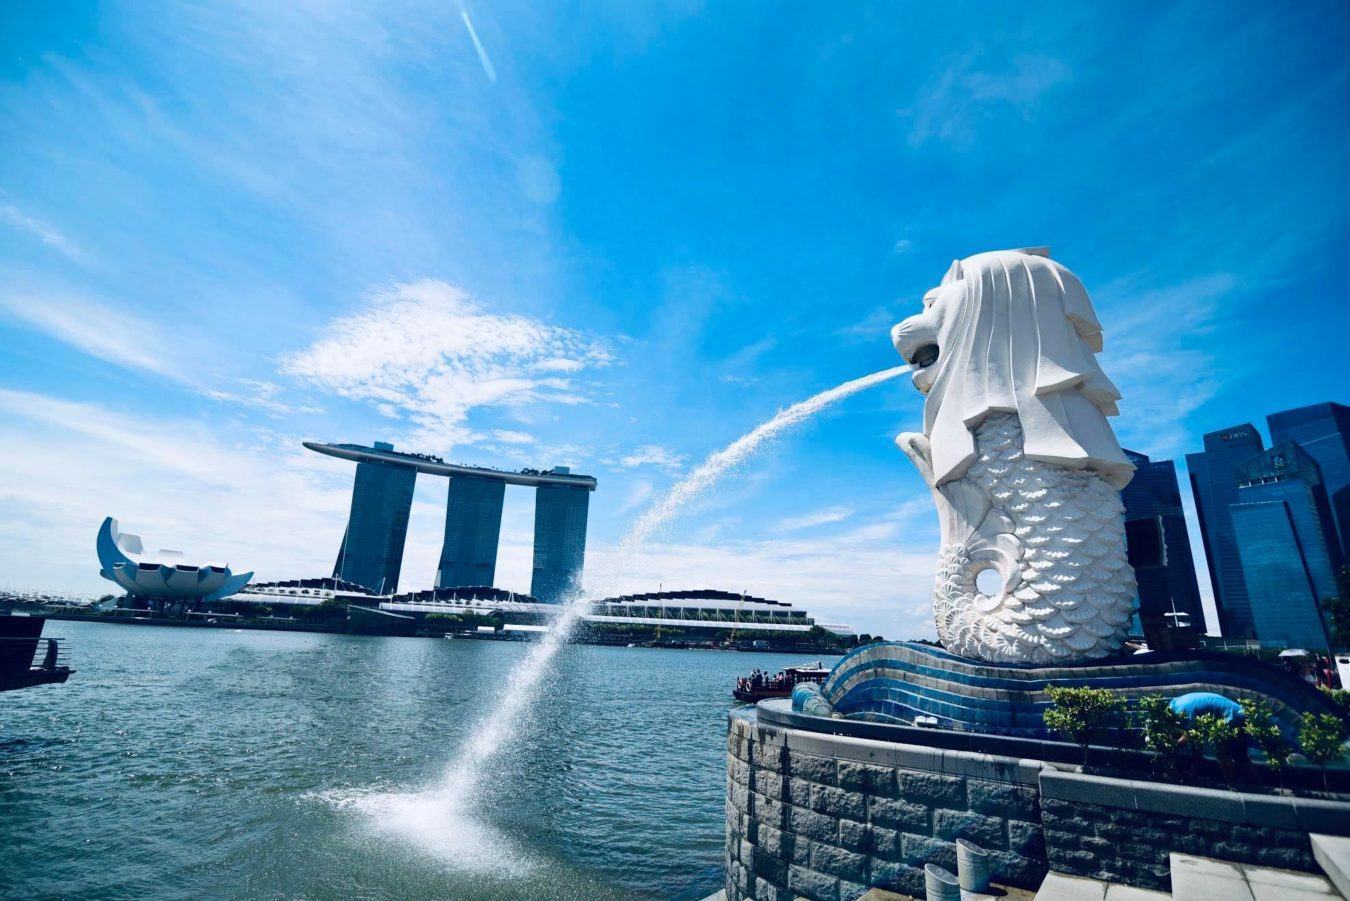 Du lịch Singapore bạn sẽ cảm nhận được những điều diệu kỳ nơi đây